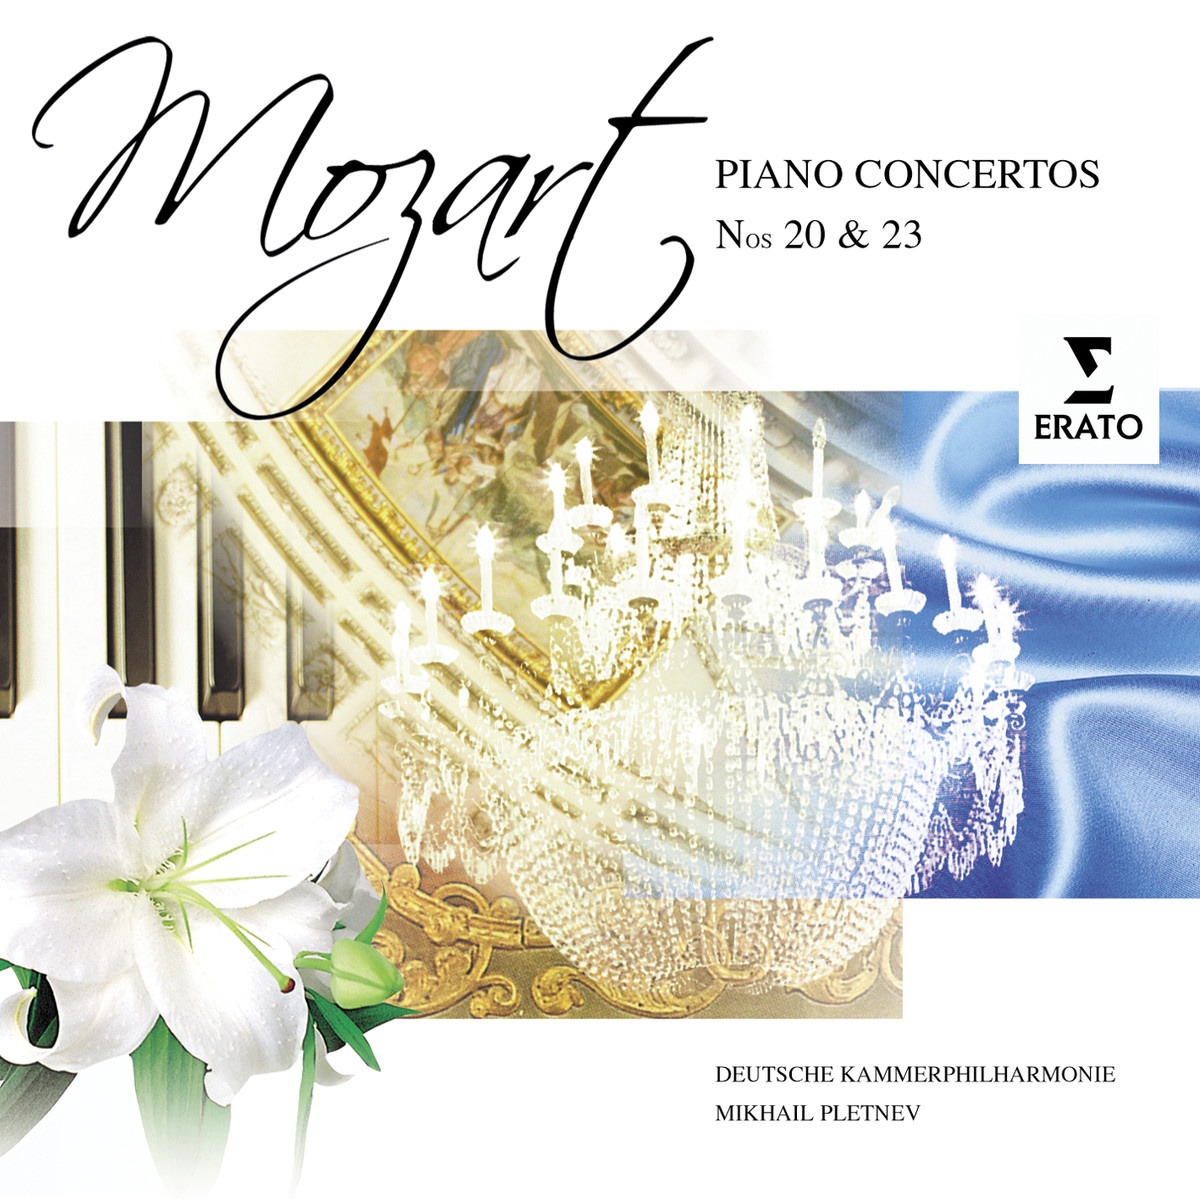 Piano Concerto No. 23 in A major K488 (Cadenza by Mozart): I. Allegro - Cadenza - Tempo I